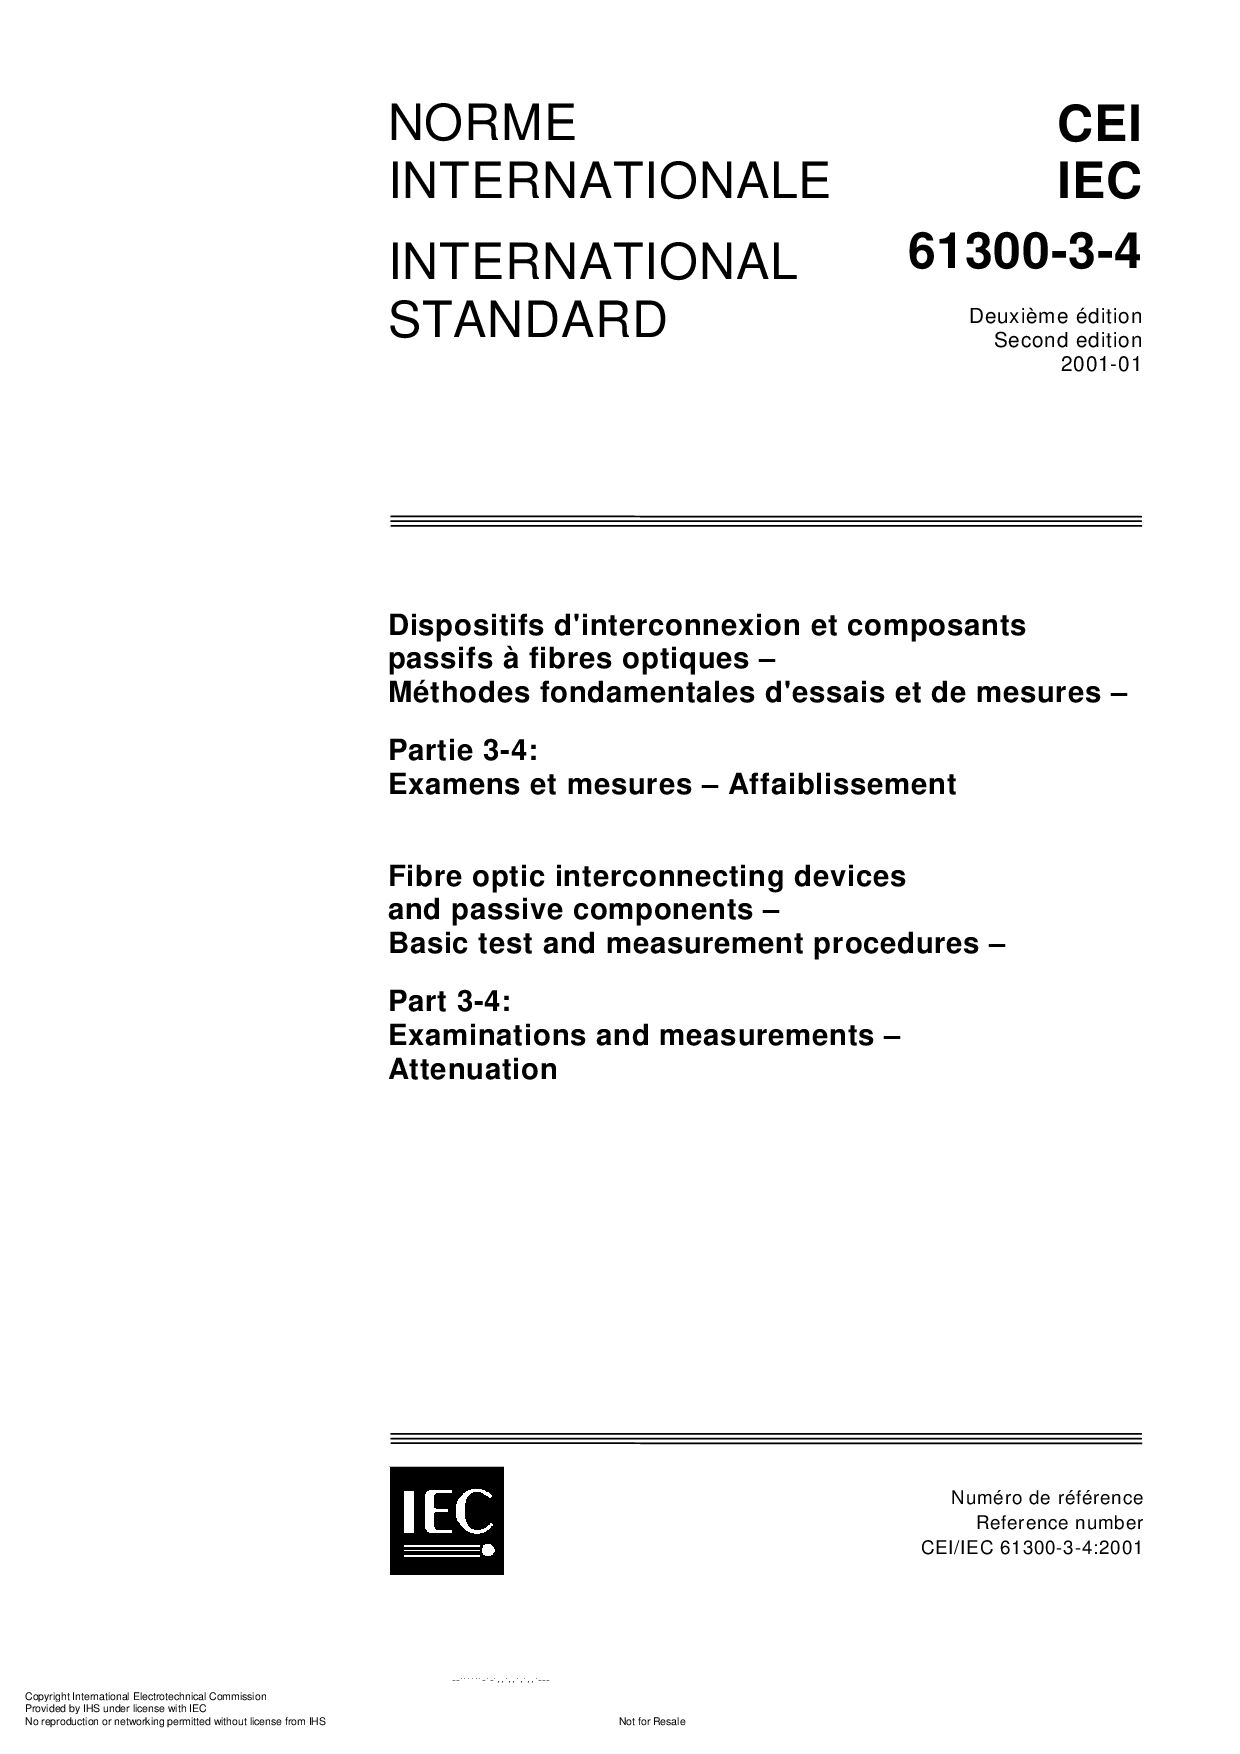 IEC 61300-3-4:2001